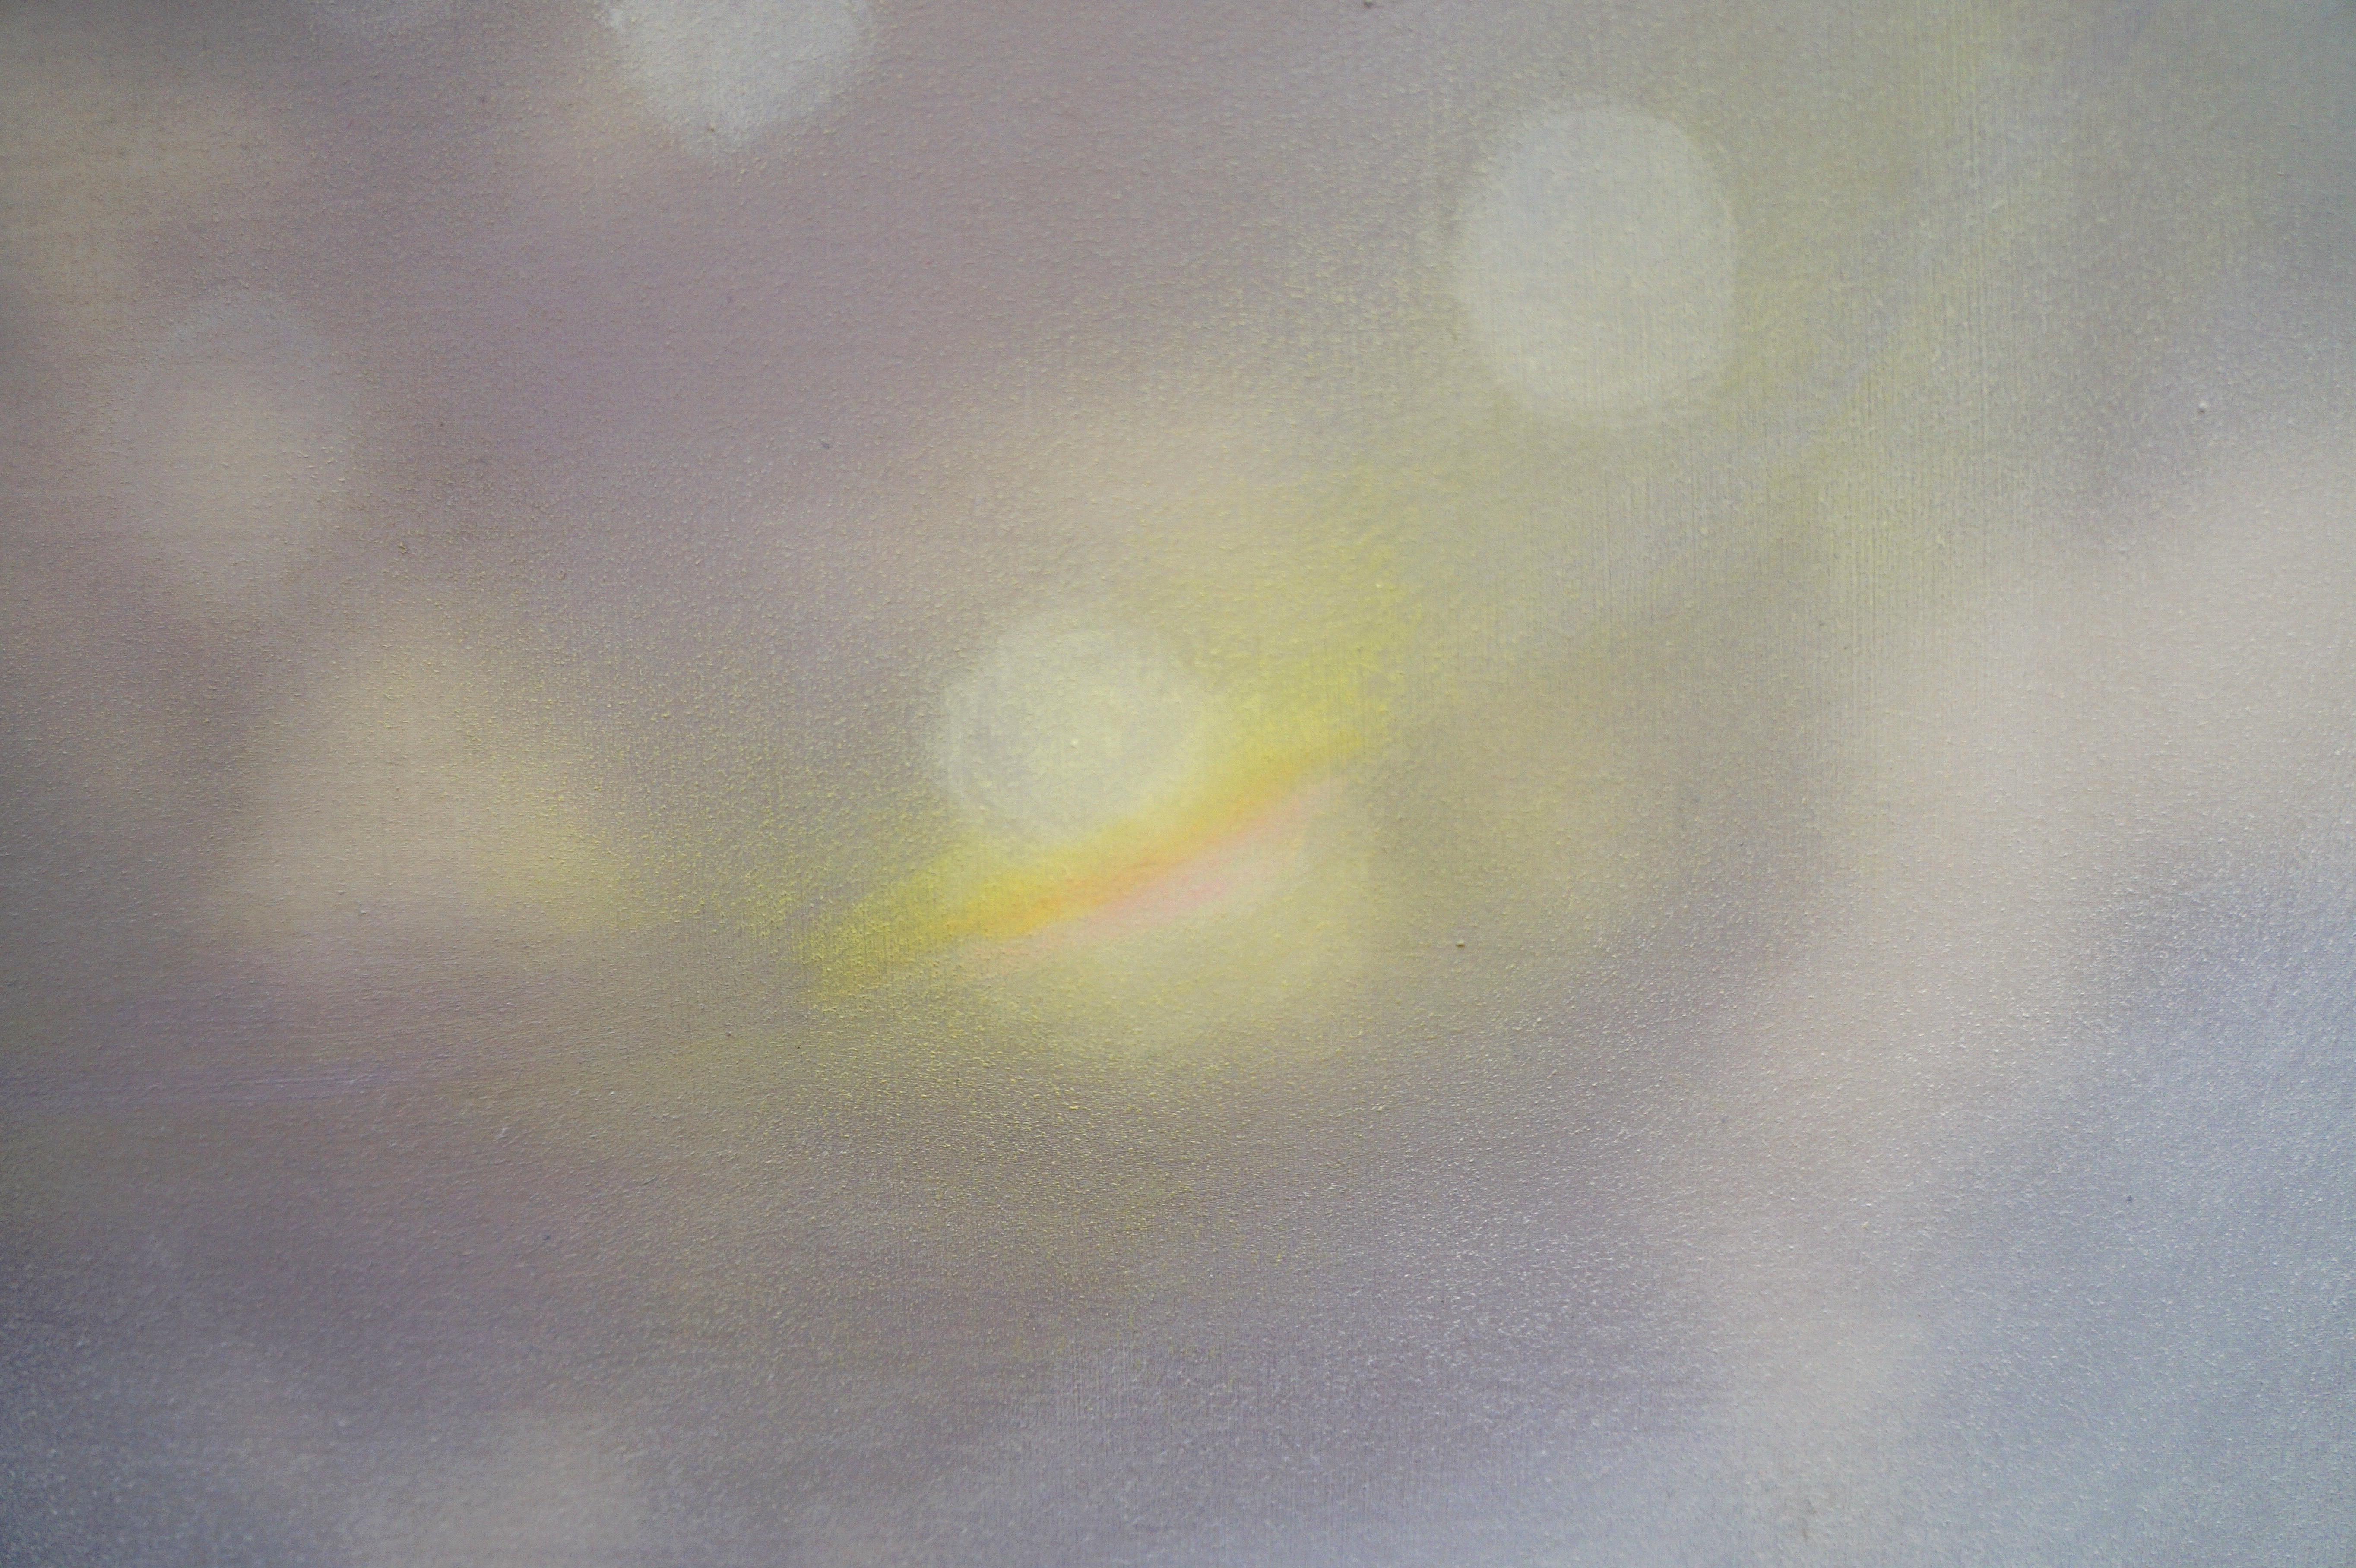 ECHO II - Grau, Lila, Gelb Zeitgenössisches abstraktes Gemälde in Mischtechnik – Painting von Heather Hartman